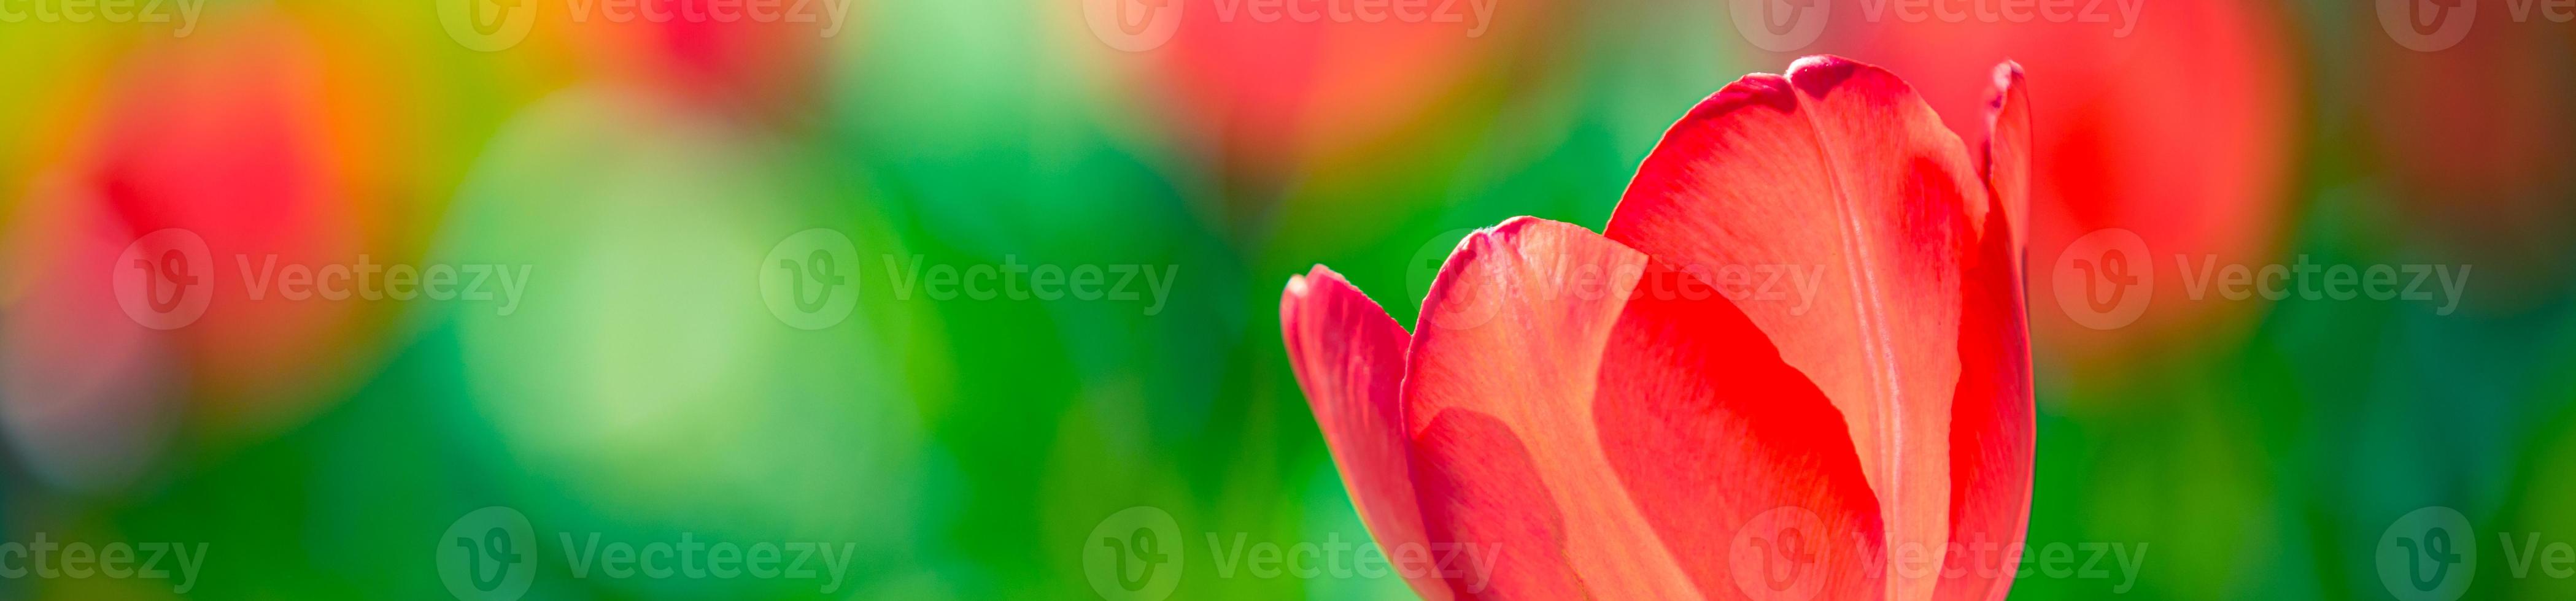 beau panorama de bouquet de tulipes rouges blanches et roses dans la nature printanière pour la conception de cartes et la bannière web. gros plan serein, paysage de nature florale d'amour romantique idyllique. feuillage luxuriant flou abstrait photo